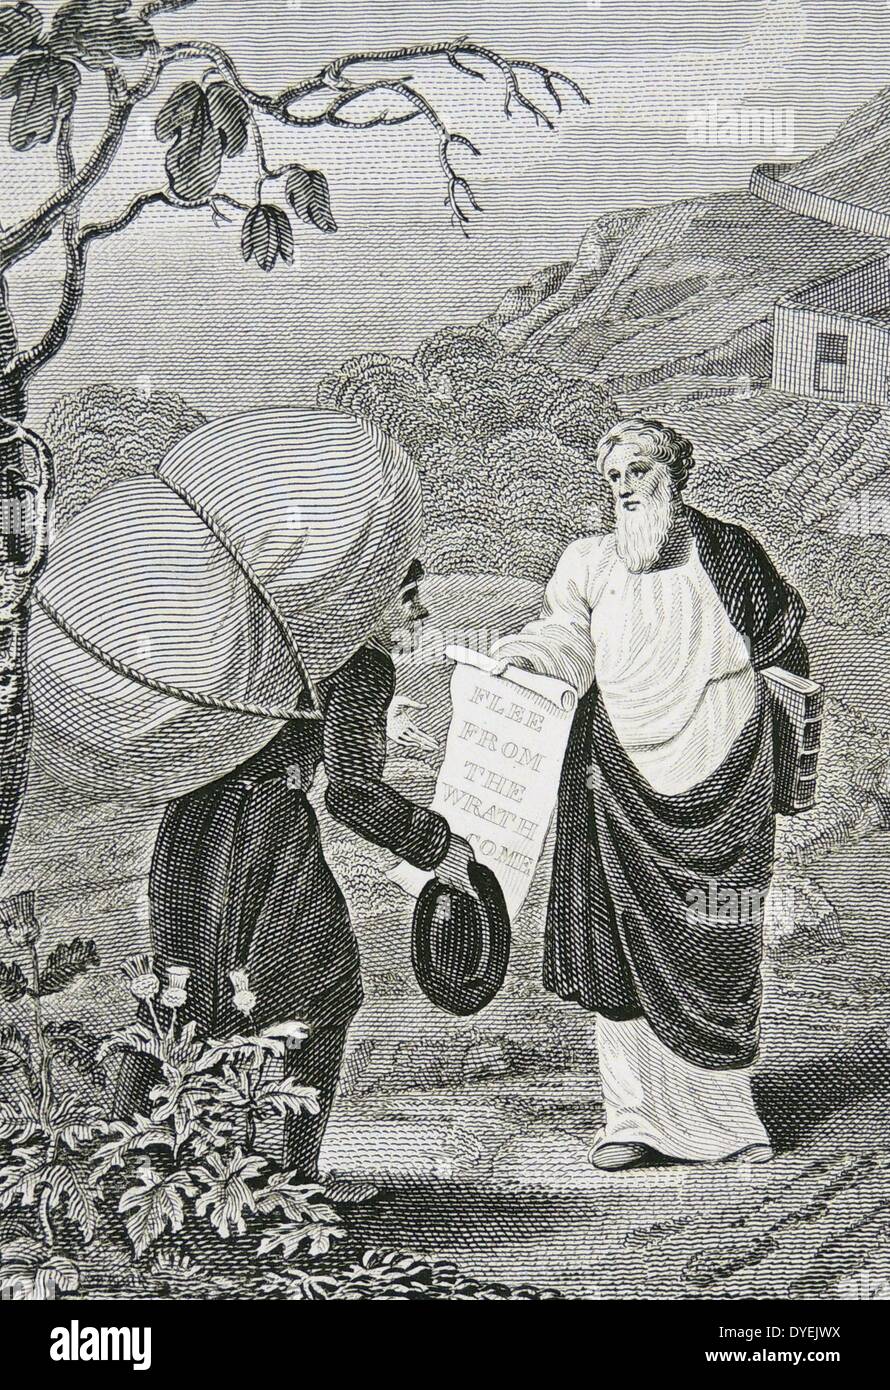 Gara di coscienza di attraversare il fiume. Illustrazione di William  Marshall Craig (C1765-c1834) formano un 1832 edizione della allegoria  cristiana ''l'Pilgrim's Progress  da John Bunyan pubblicato per la prima  volta nel